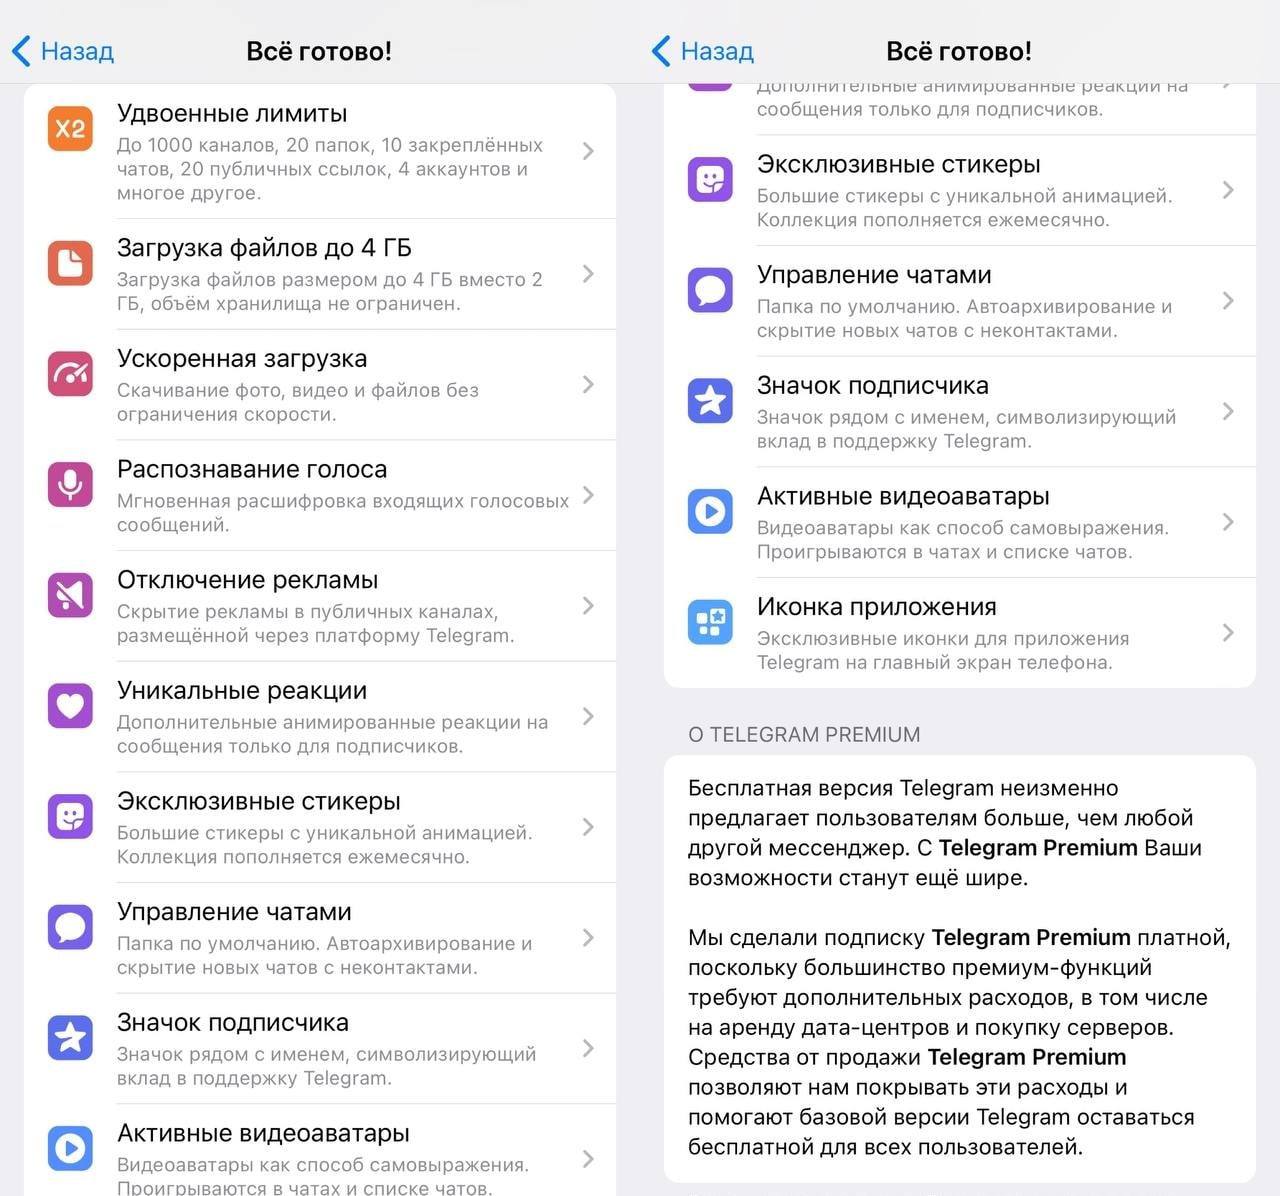 Скачать телеграмм премиум на андроид бесплатно последняя версия на русском без вирусов фото 108